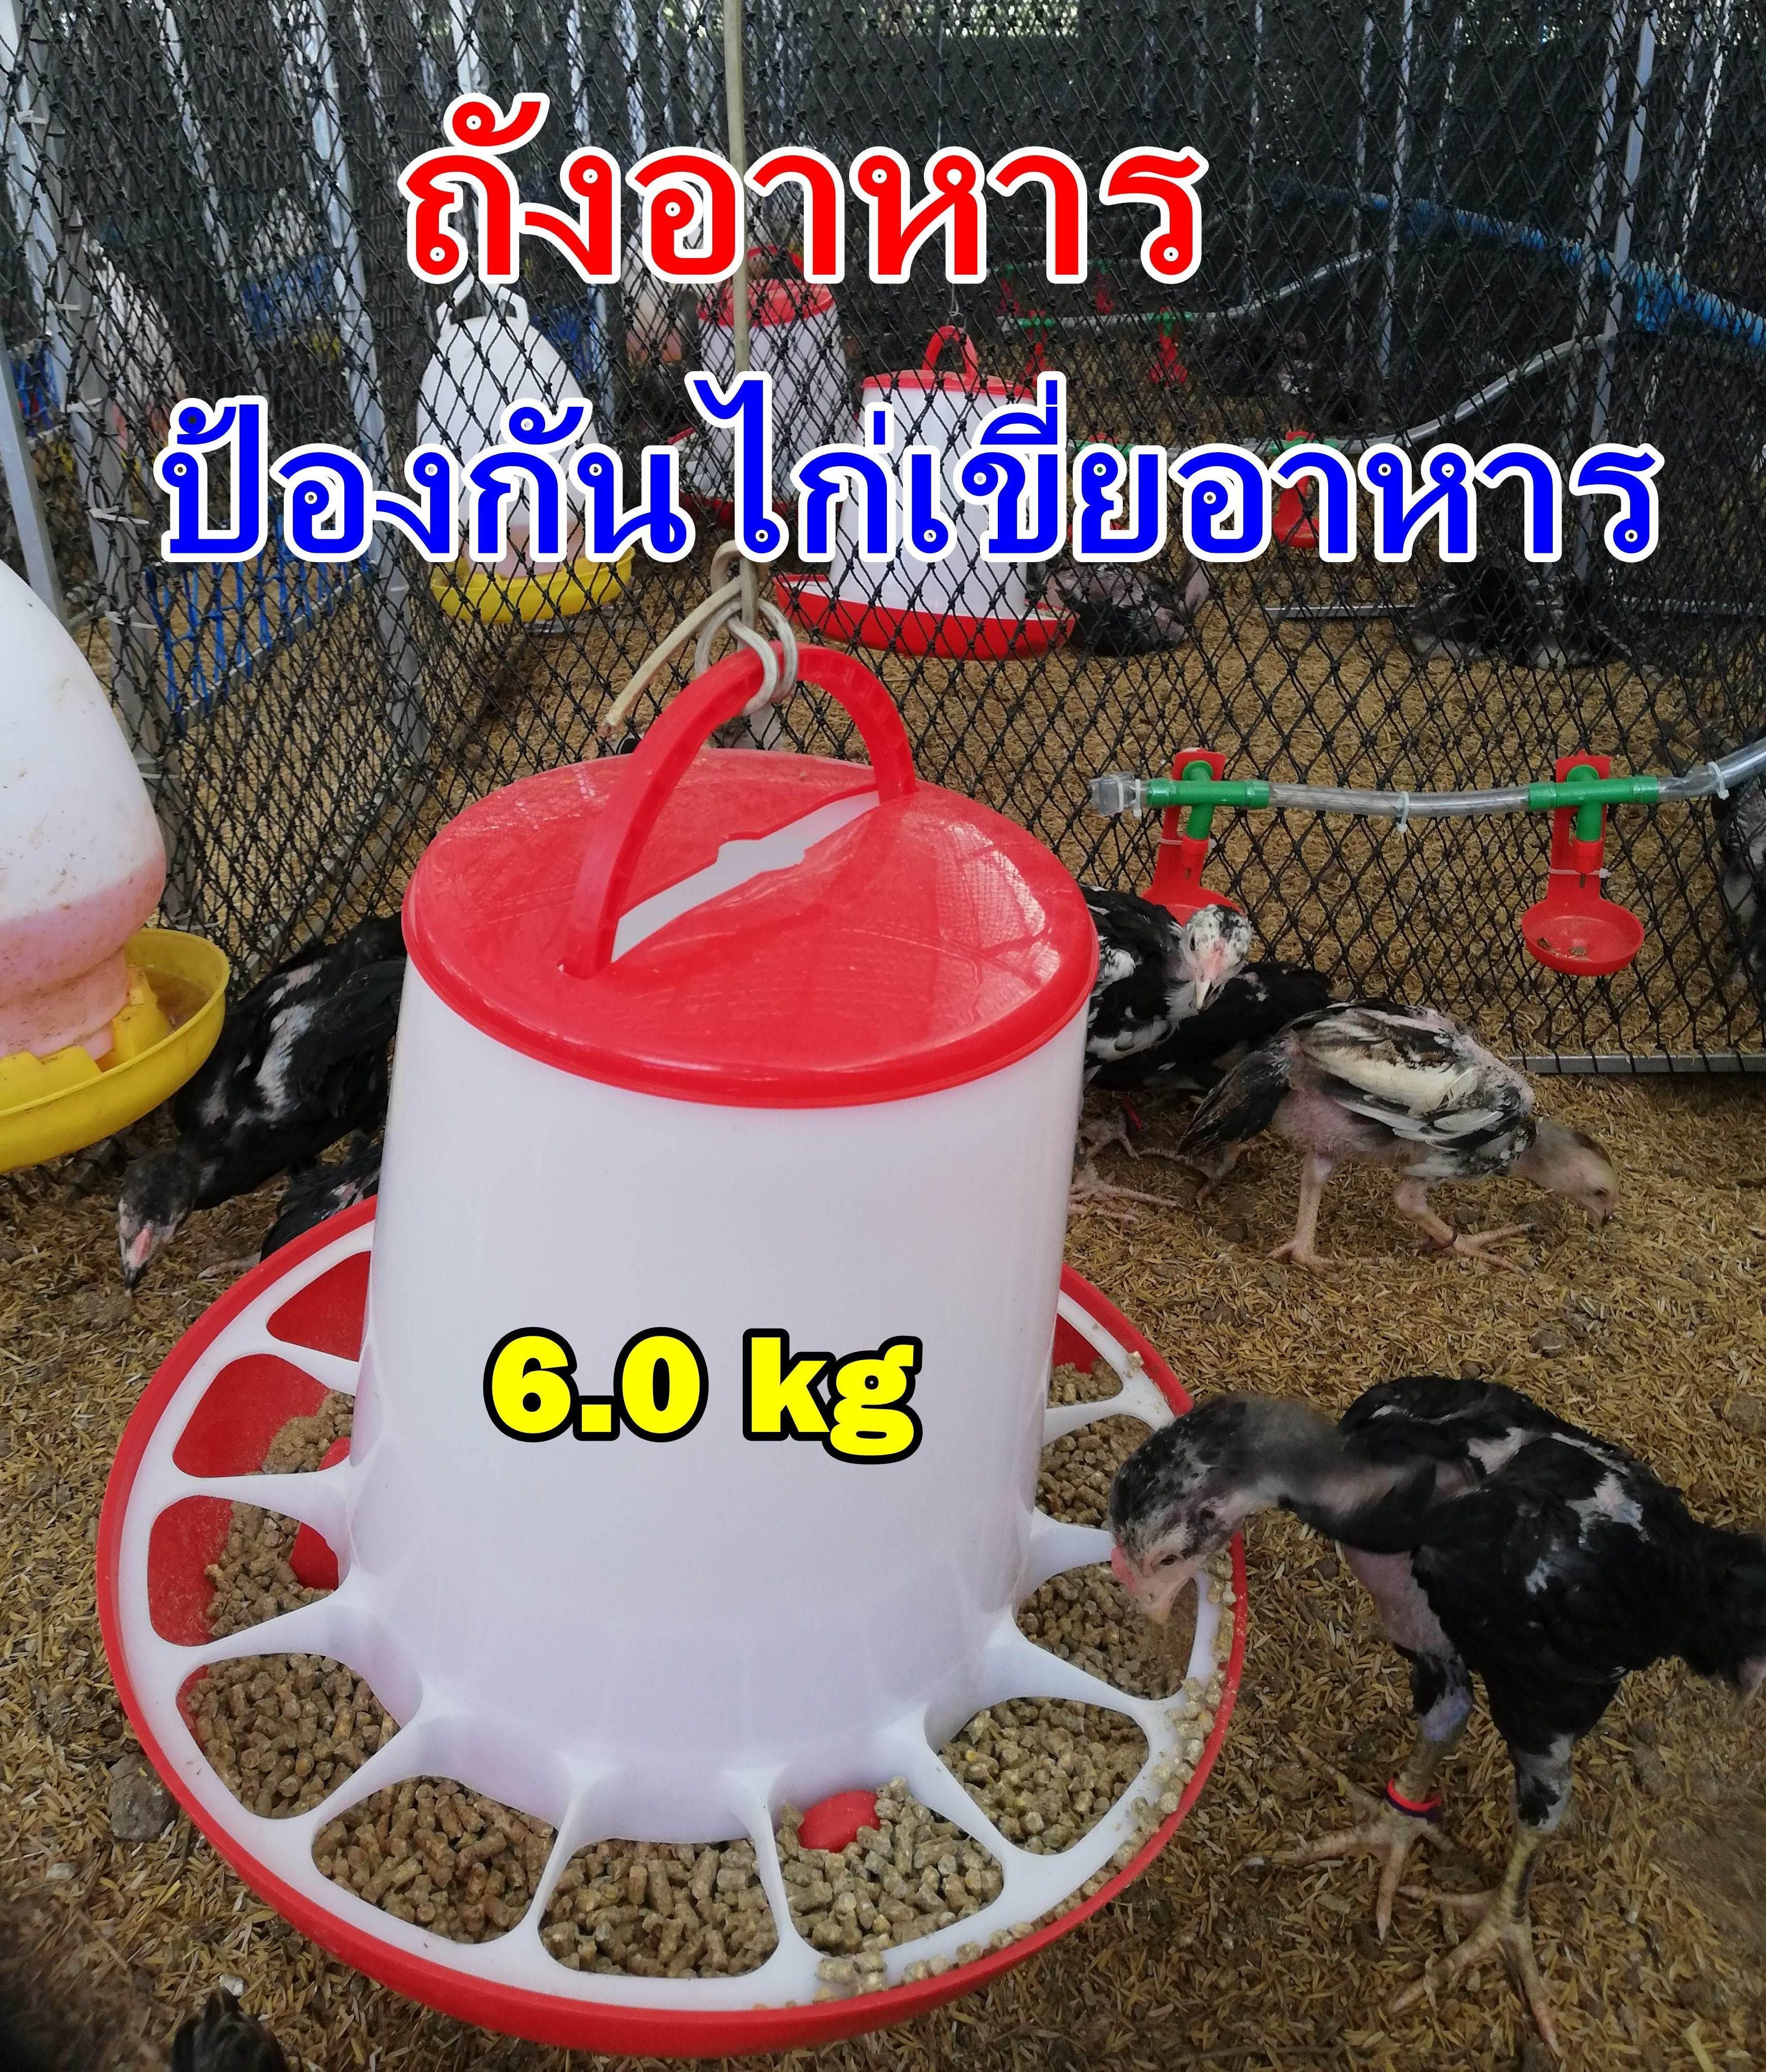 ถังอาหารไก่ ป้องกันไก่เขี่ย ประหยัดอาหาร /ใส่อาหาร 6kg.